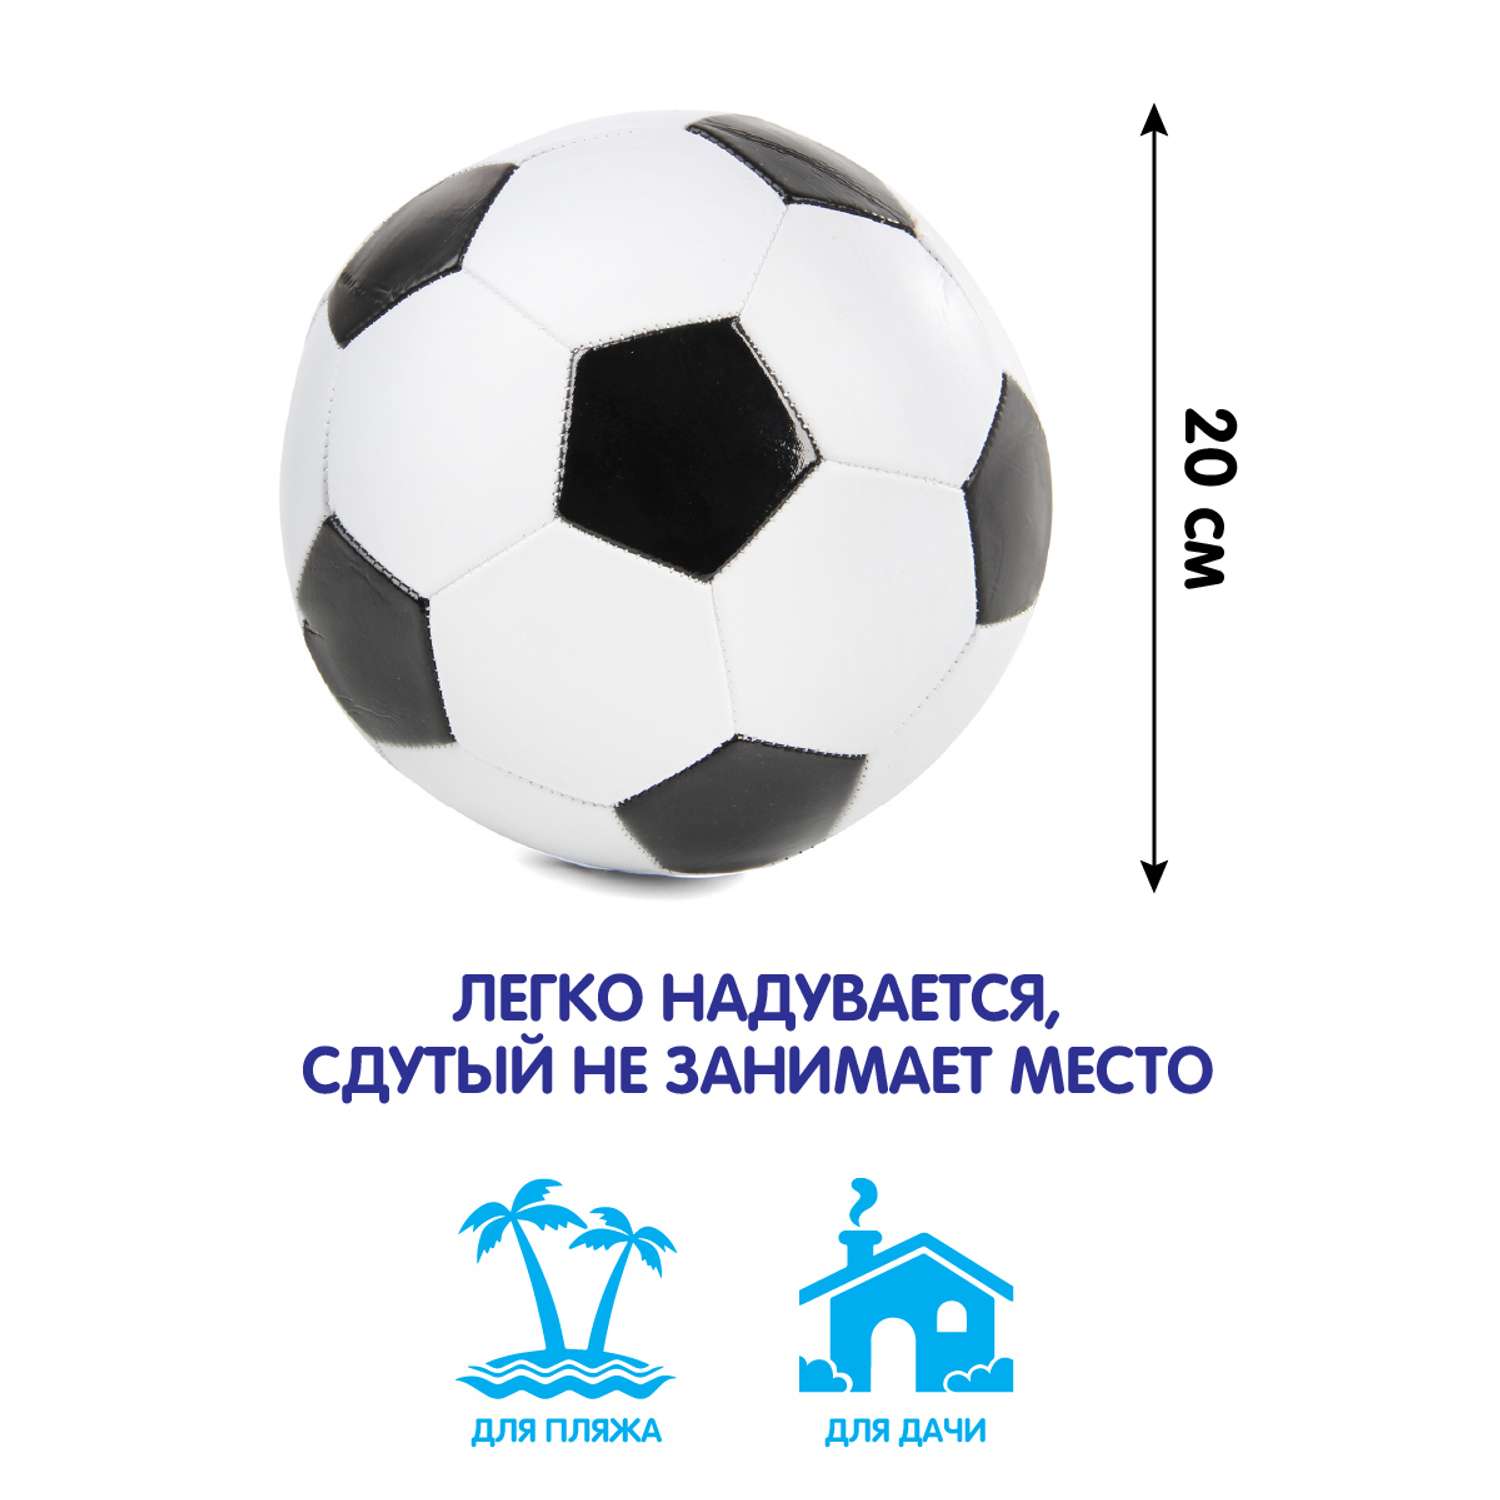 Мяч Veld Co футбольный 20 см - фото 2